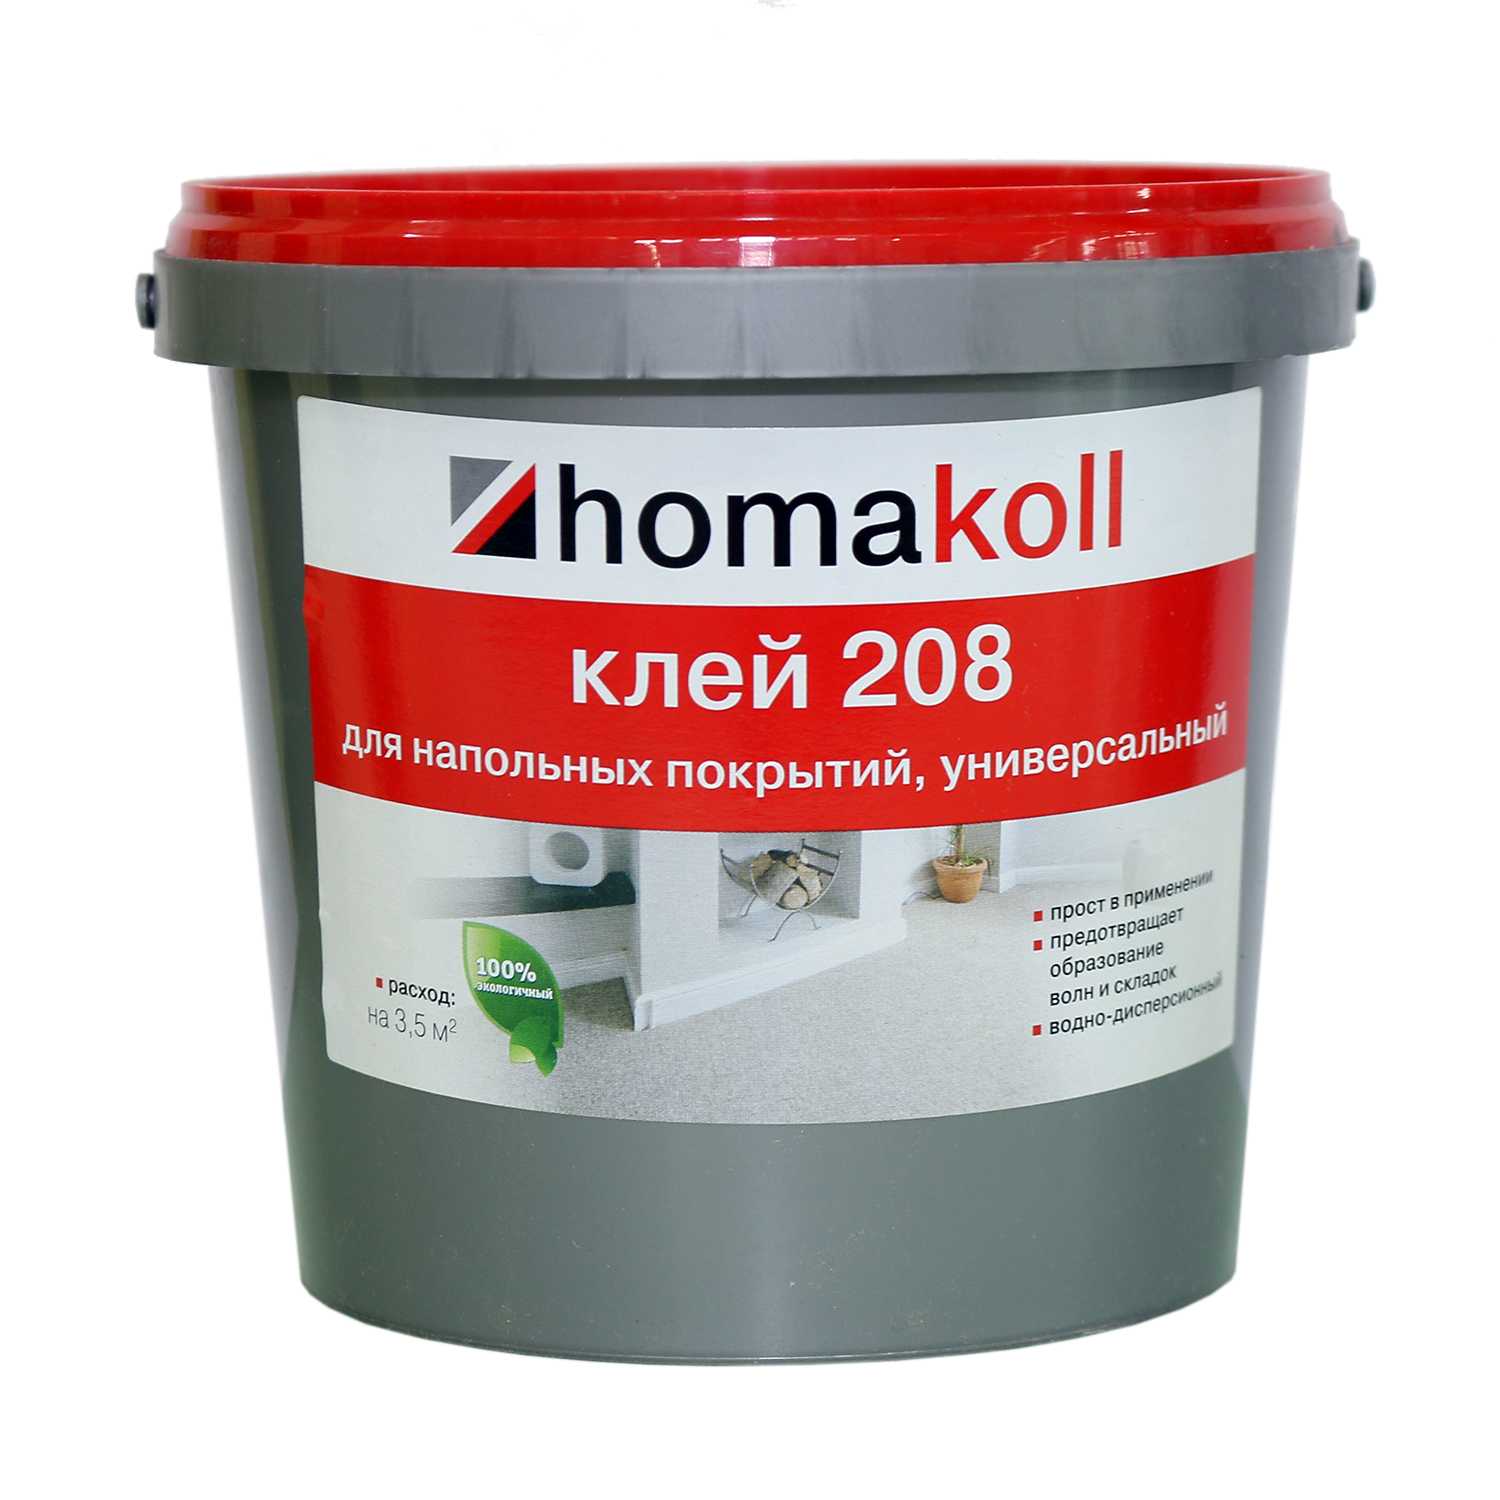 Клей homakoll 208 (14 кг)